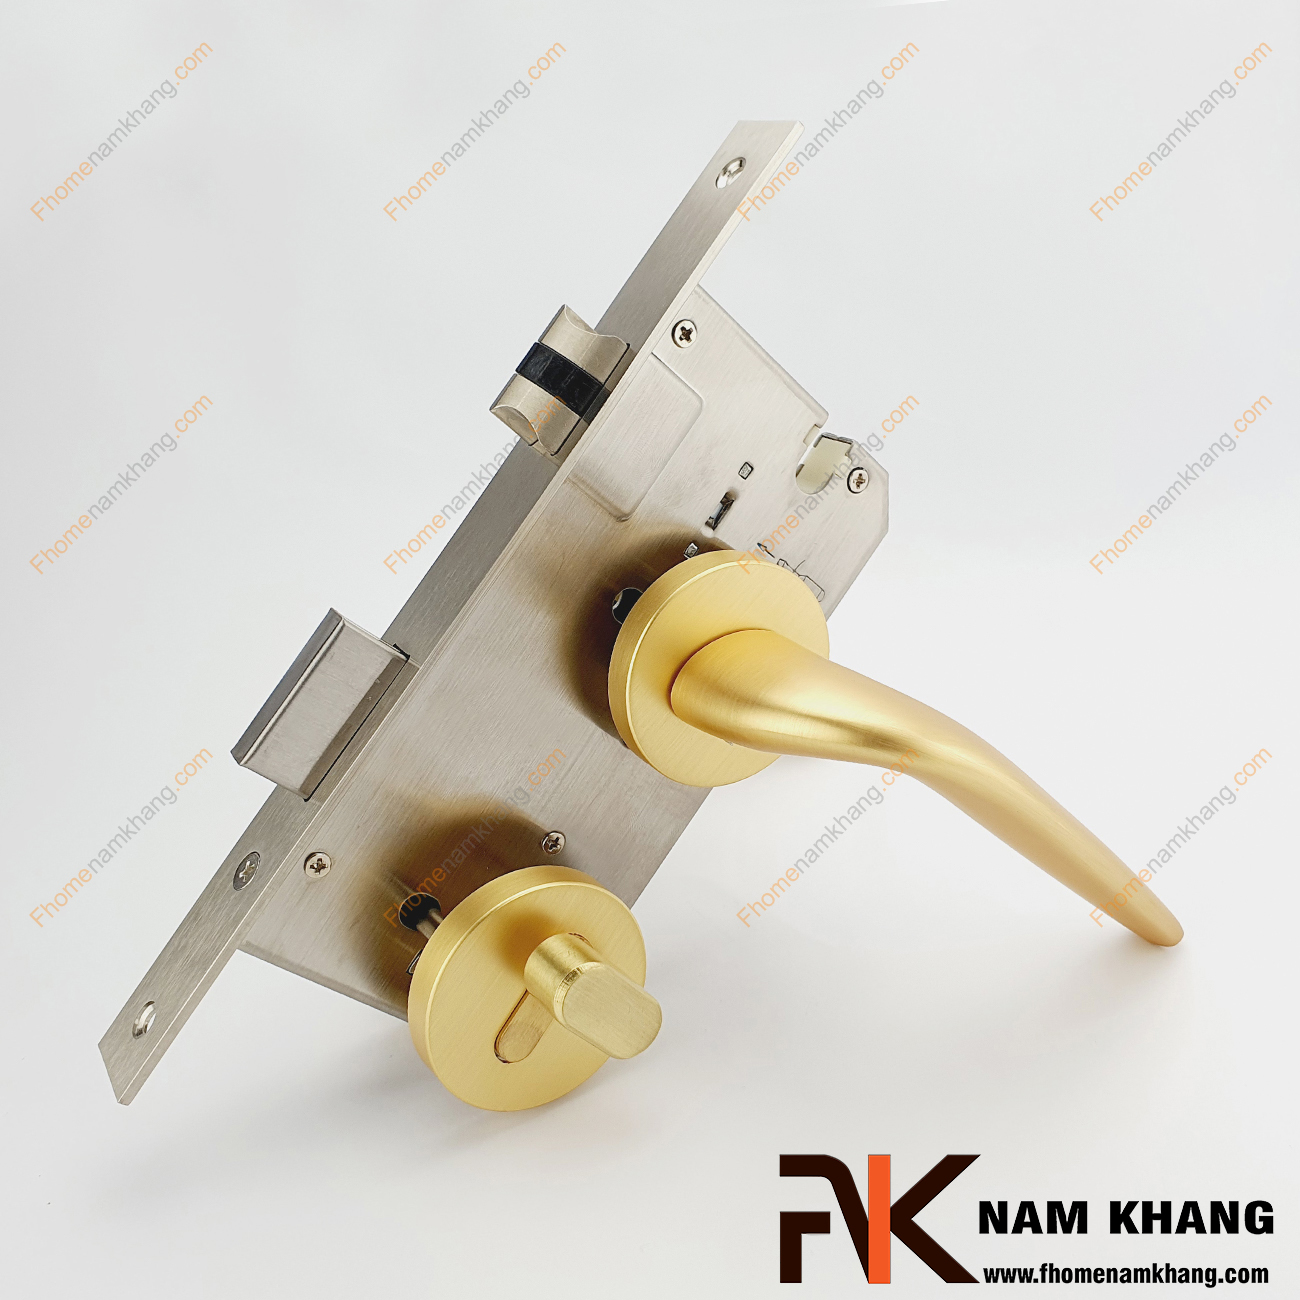 Khóa cửa phân thể cao cấp màu vàng mờ NK574-VM được sản xuất từ hợp kim cao cấp. Dòng khóa này có thiết kế phần ốp khóa và tay gạt riêng biệt, khá nhỏ gọn và tạo được sự nổi bật độc đáo.